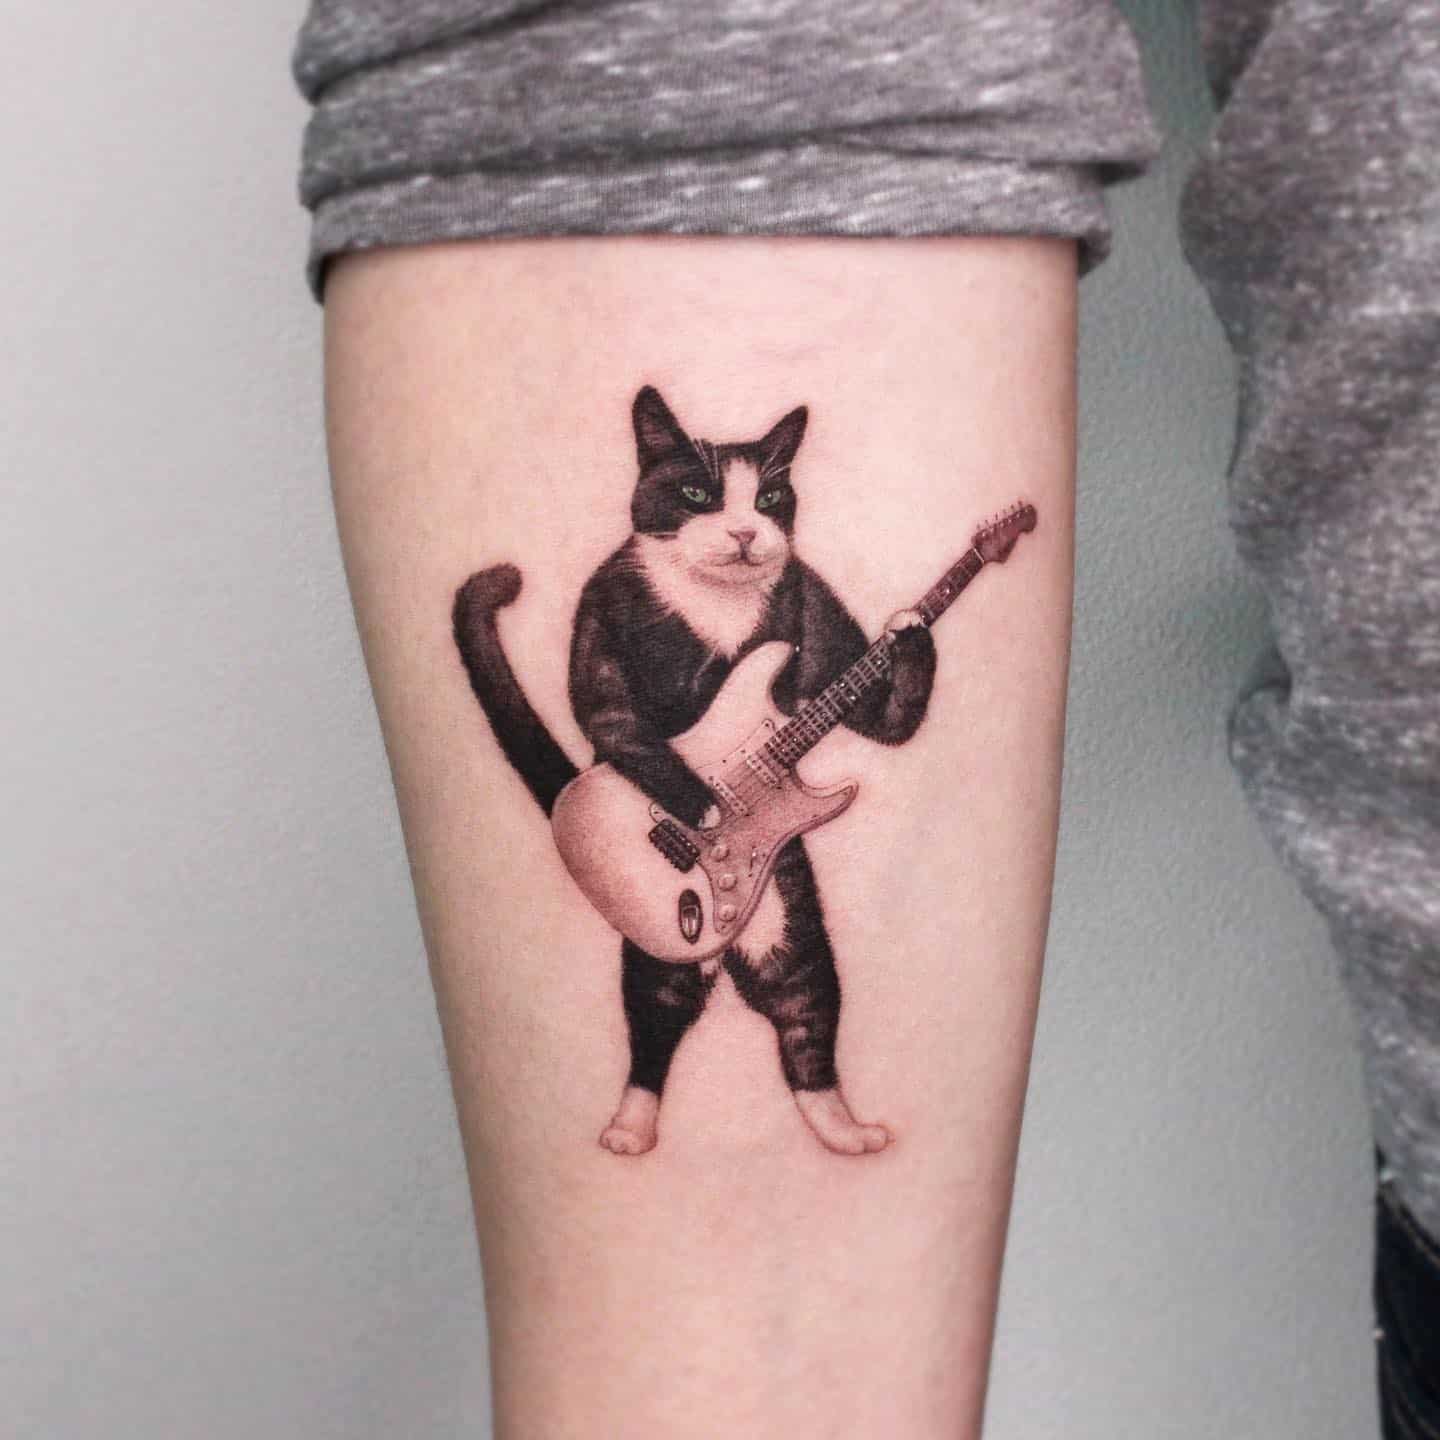 Guitar tattoo design by tattooist eheon